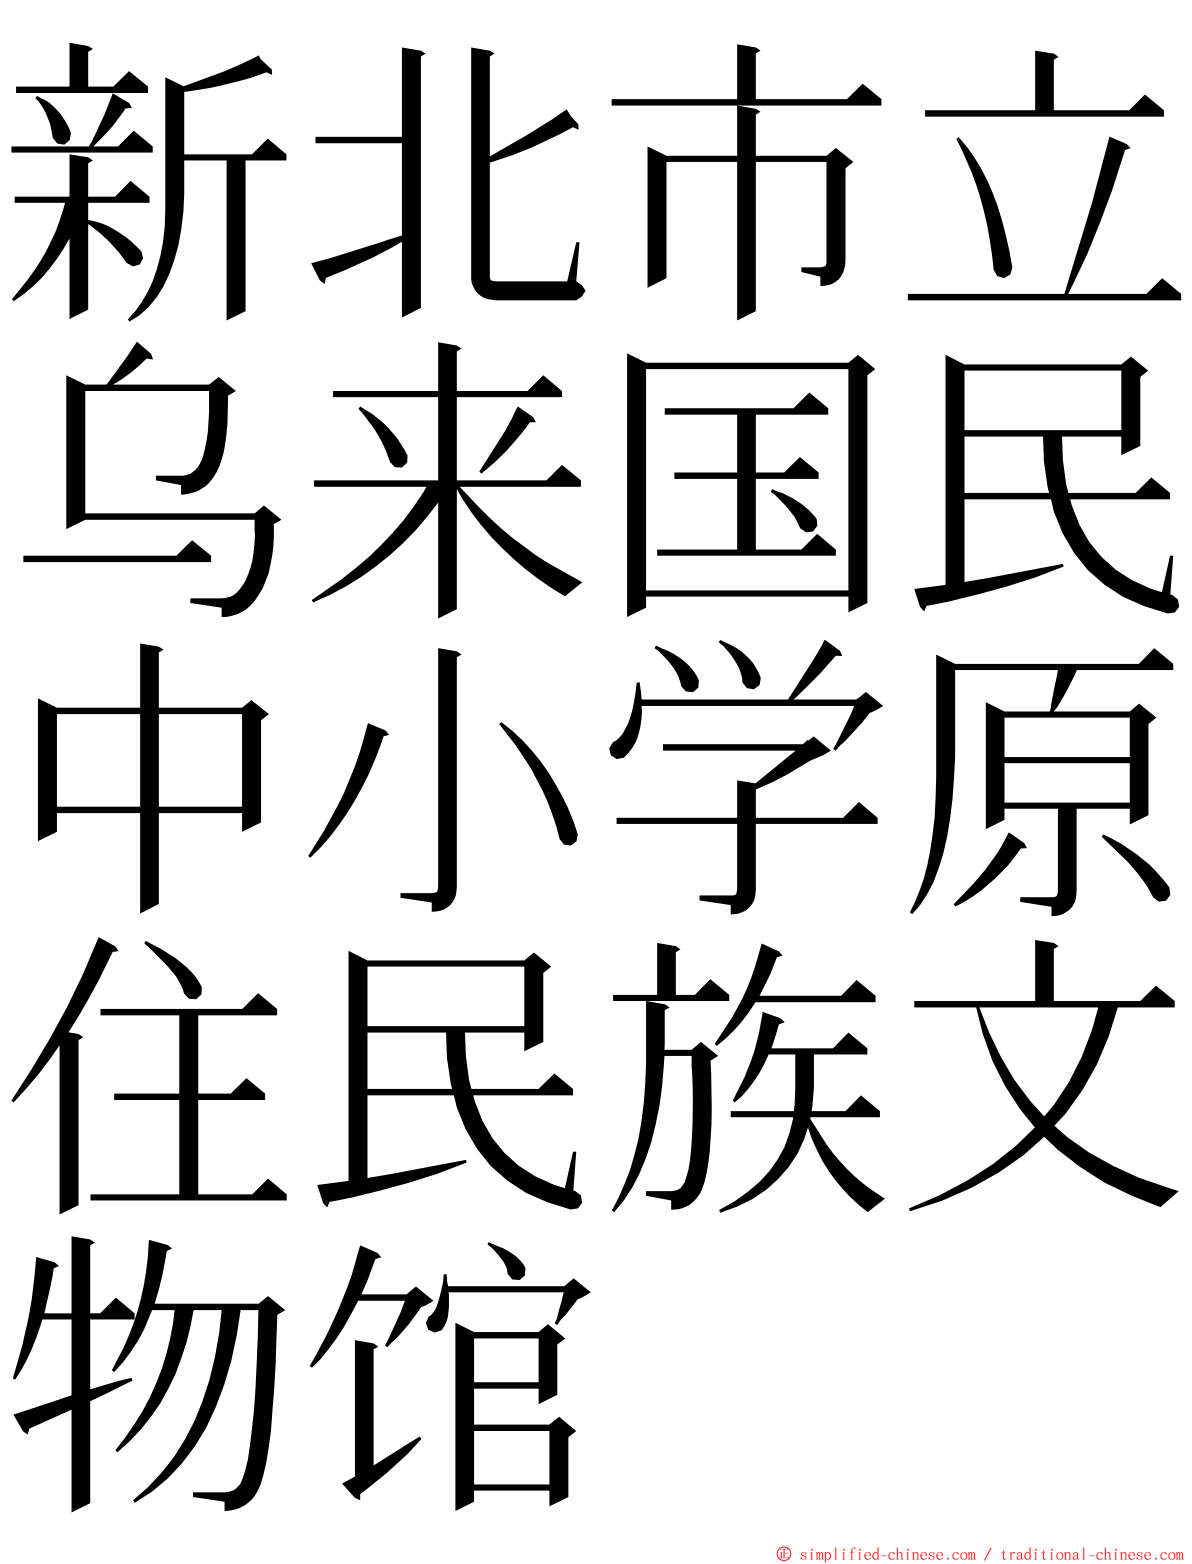 新北市立乌来国民中小学原住民族文物馆 ming font